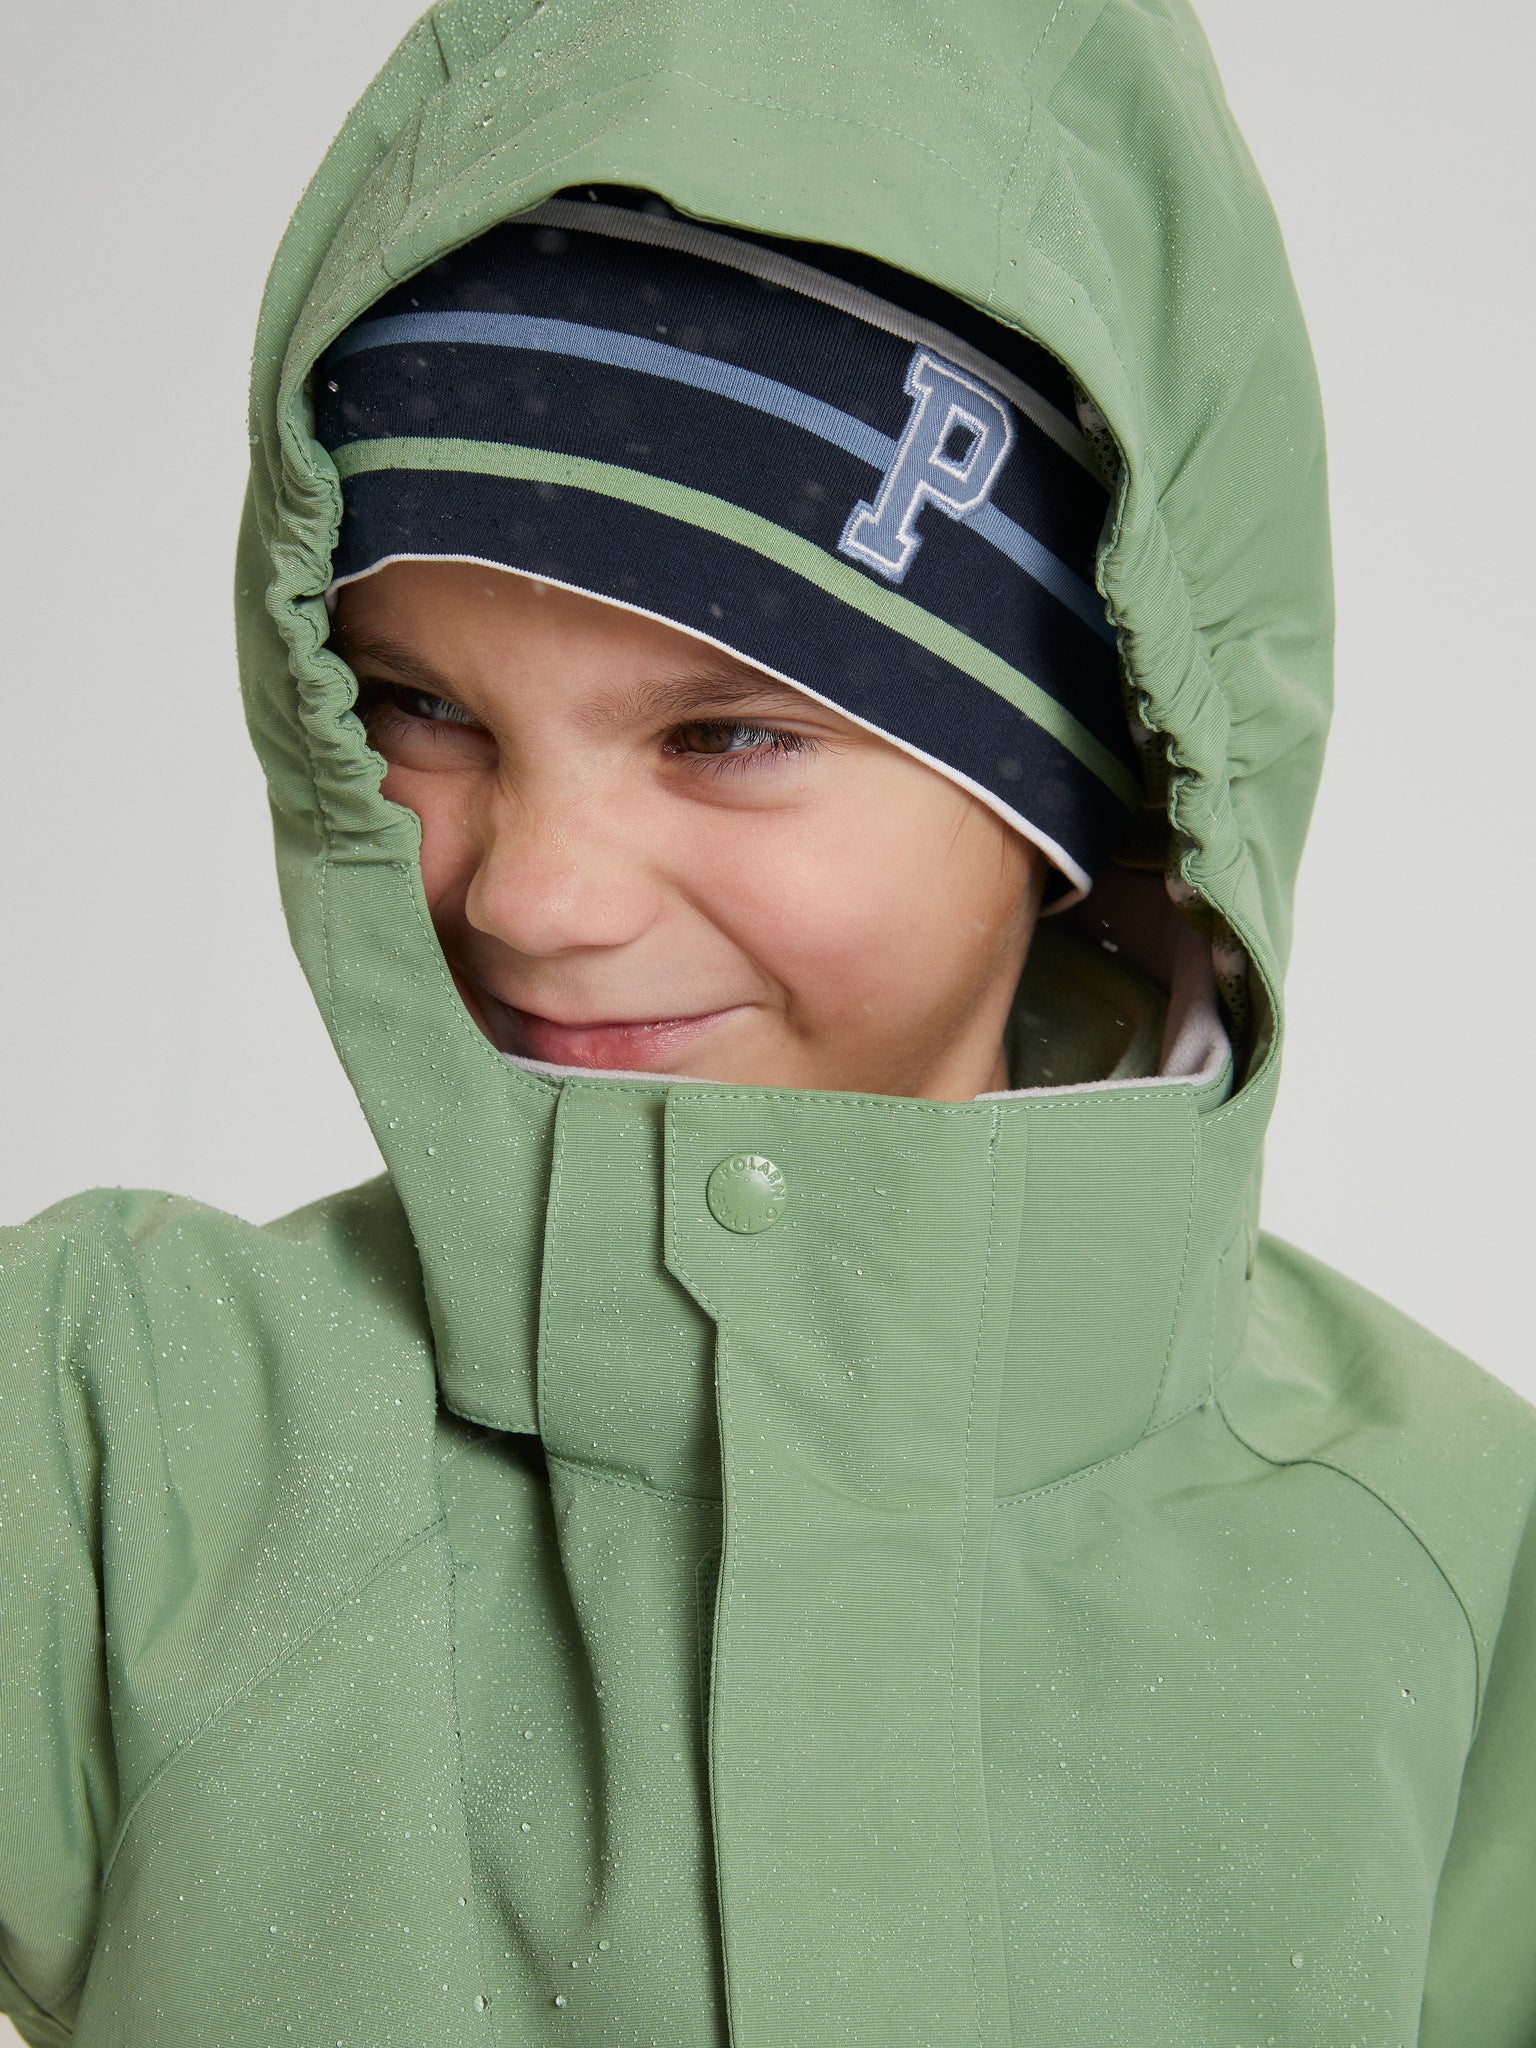 Waterproof Kids School Coat